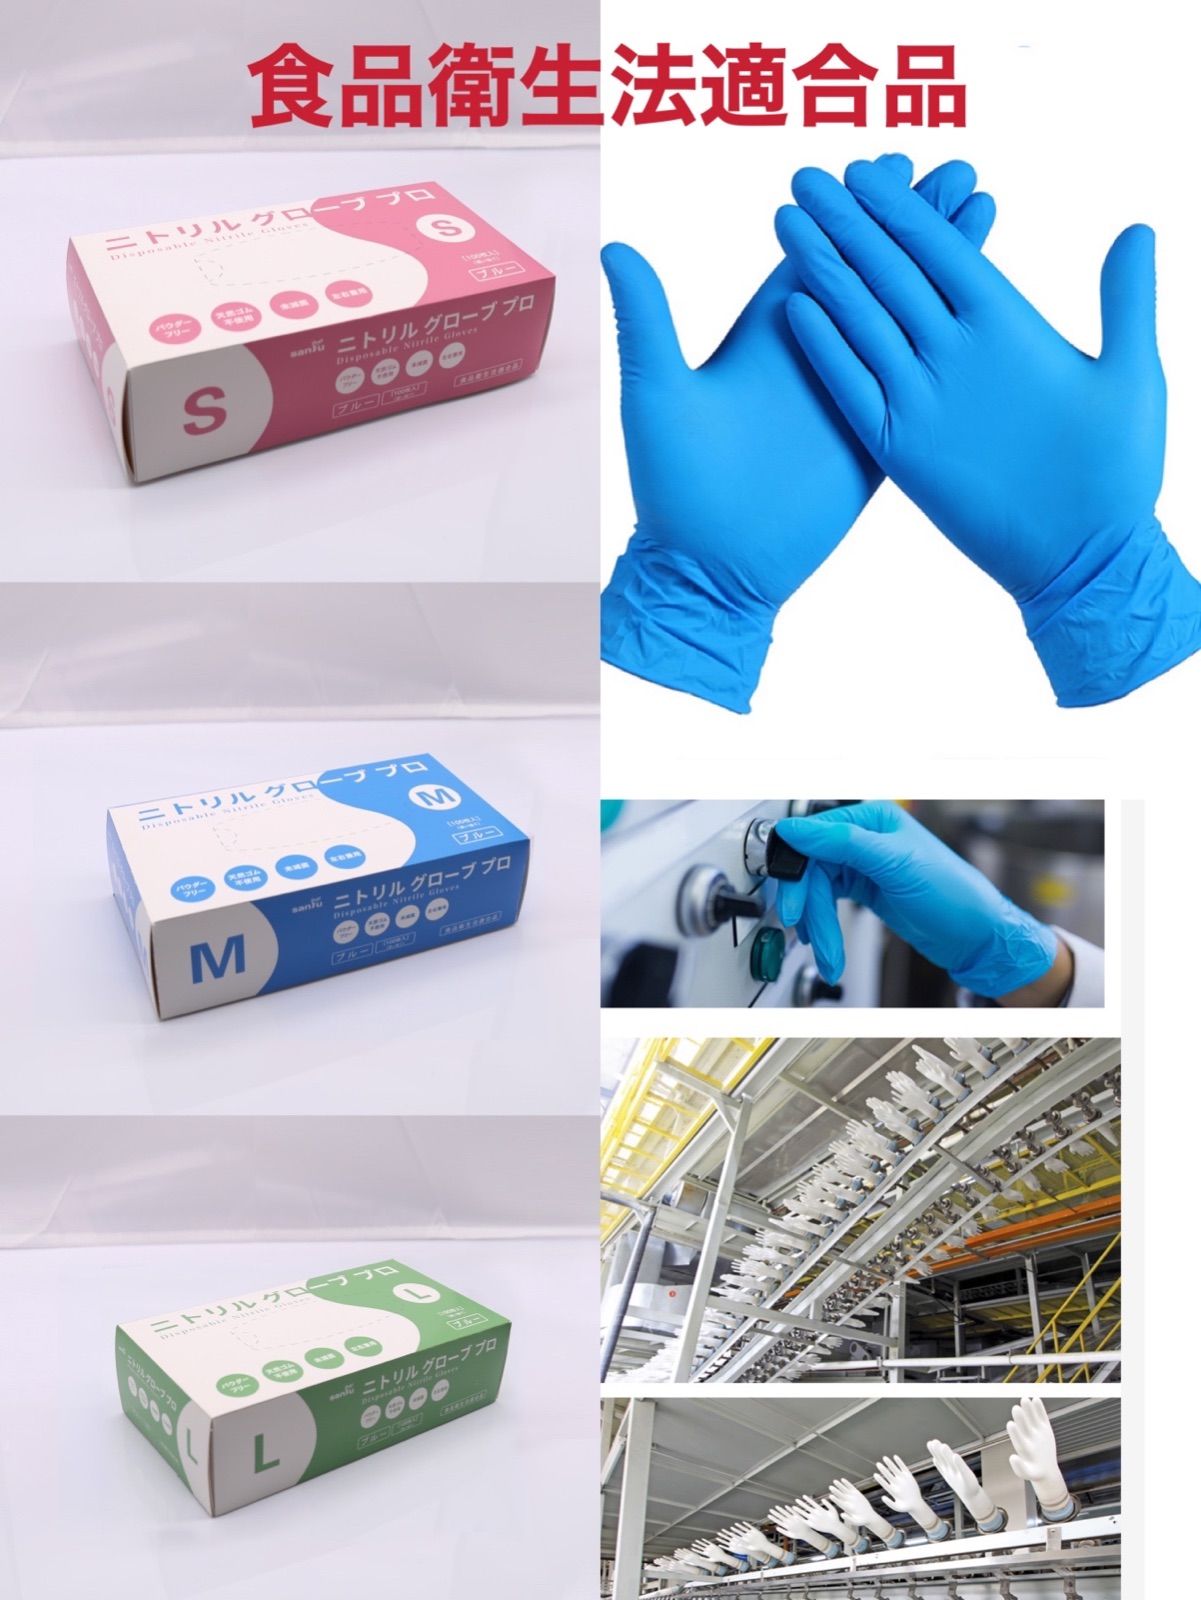 ニトリル手袋 使い捨て手袋 ニトリルグローブ 粉なしブルー S食品衛生適合品 通販